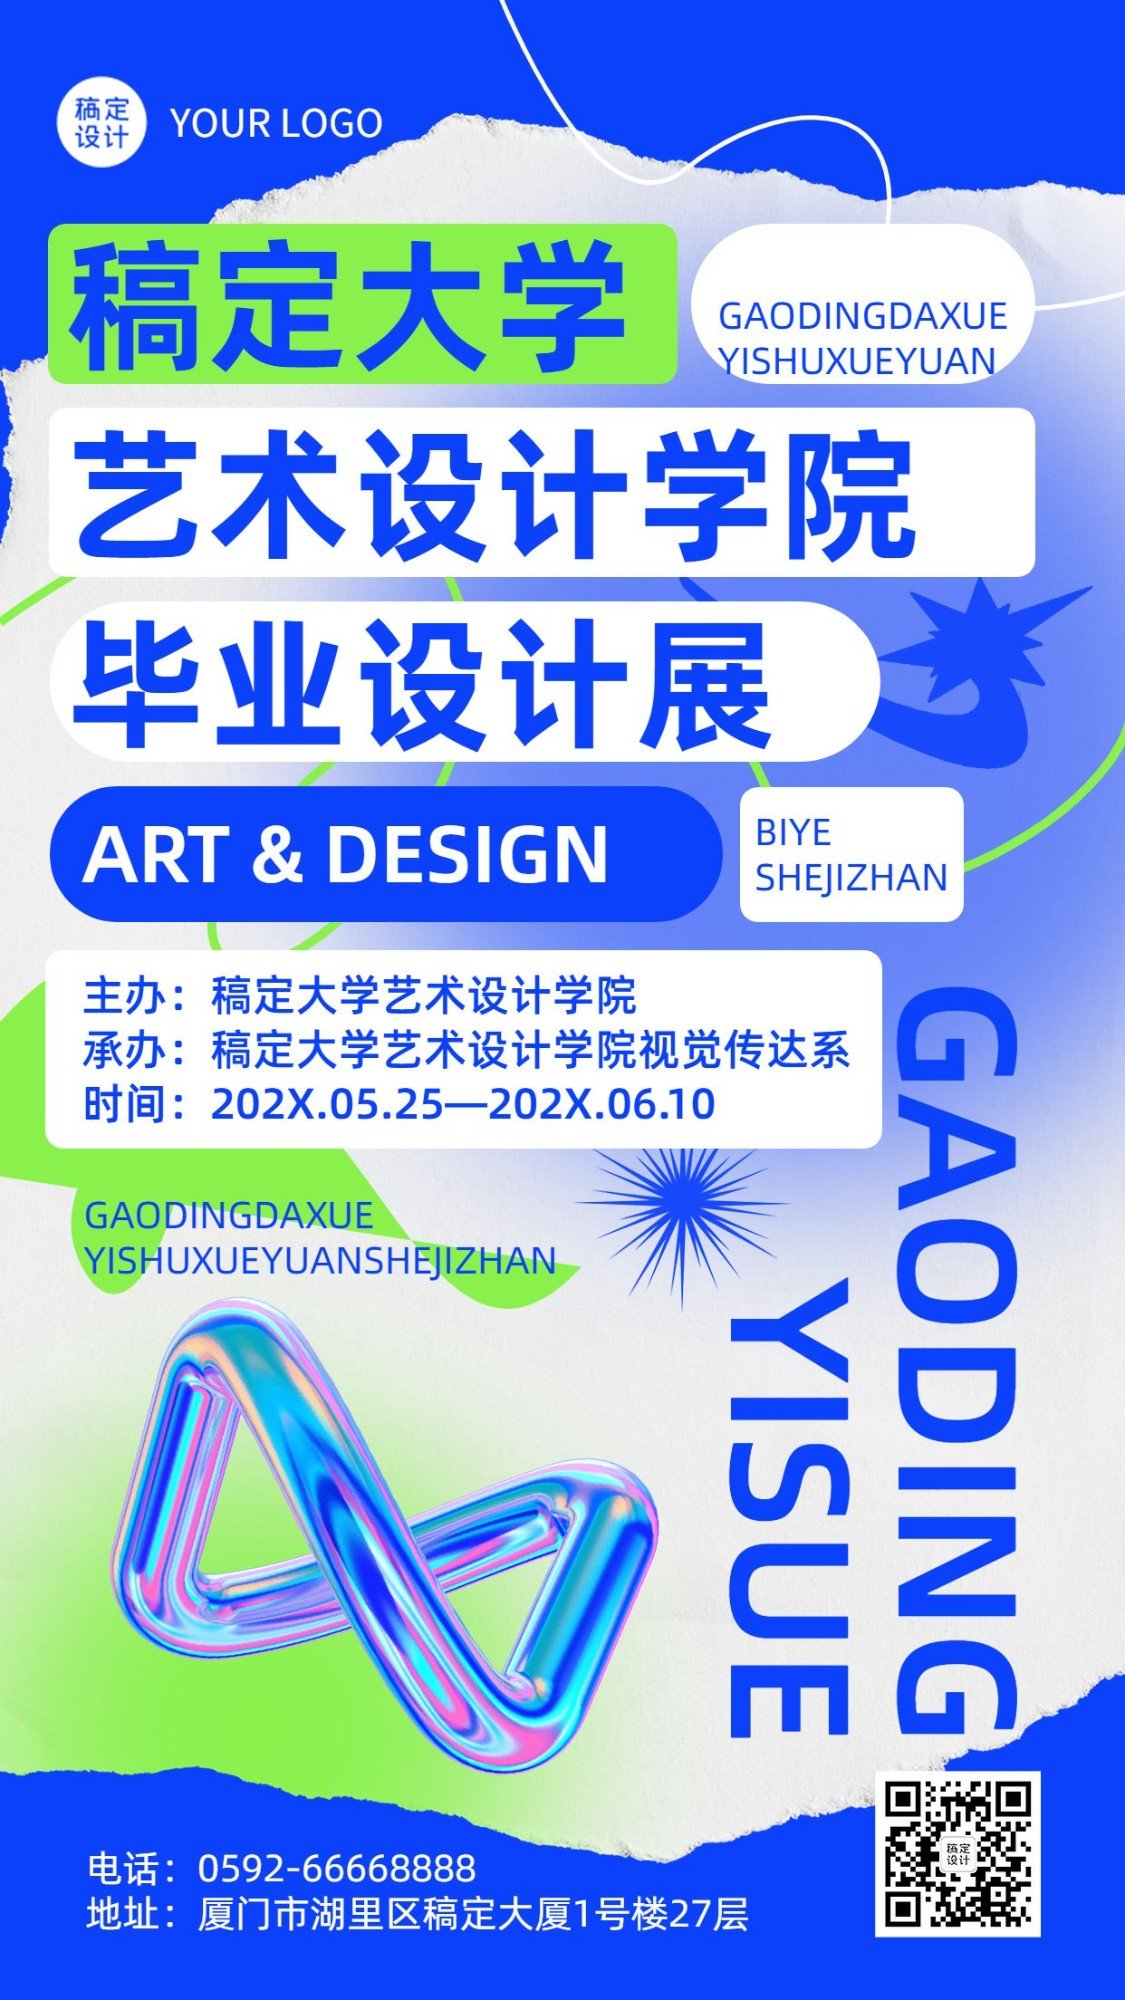 毕业设计展艺术展宣传手机海报预览效果